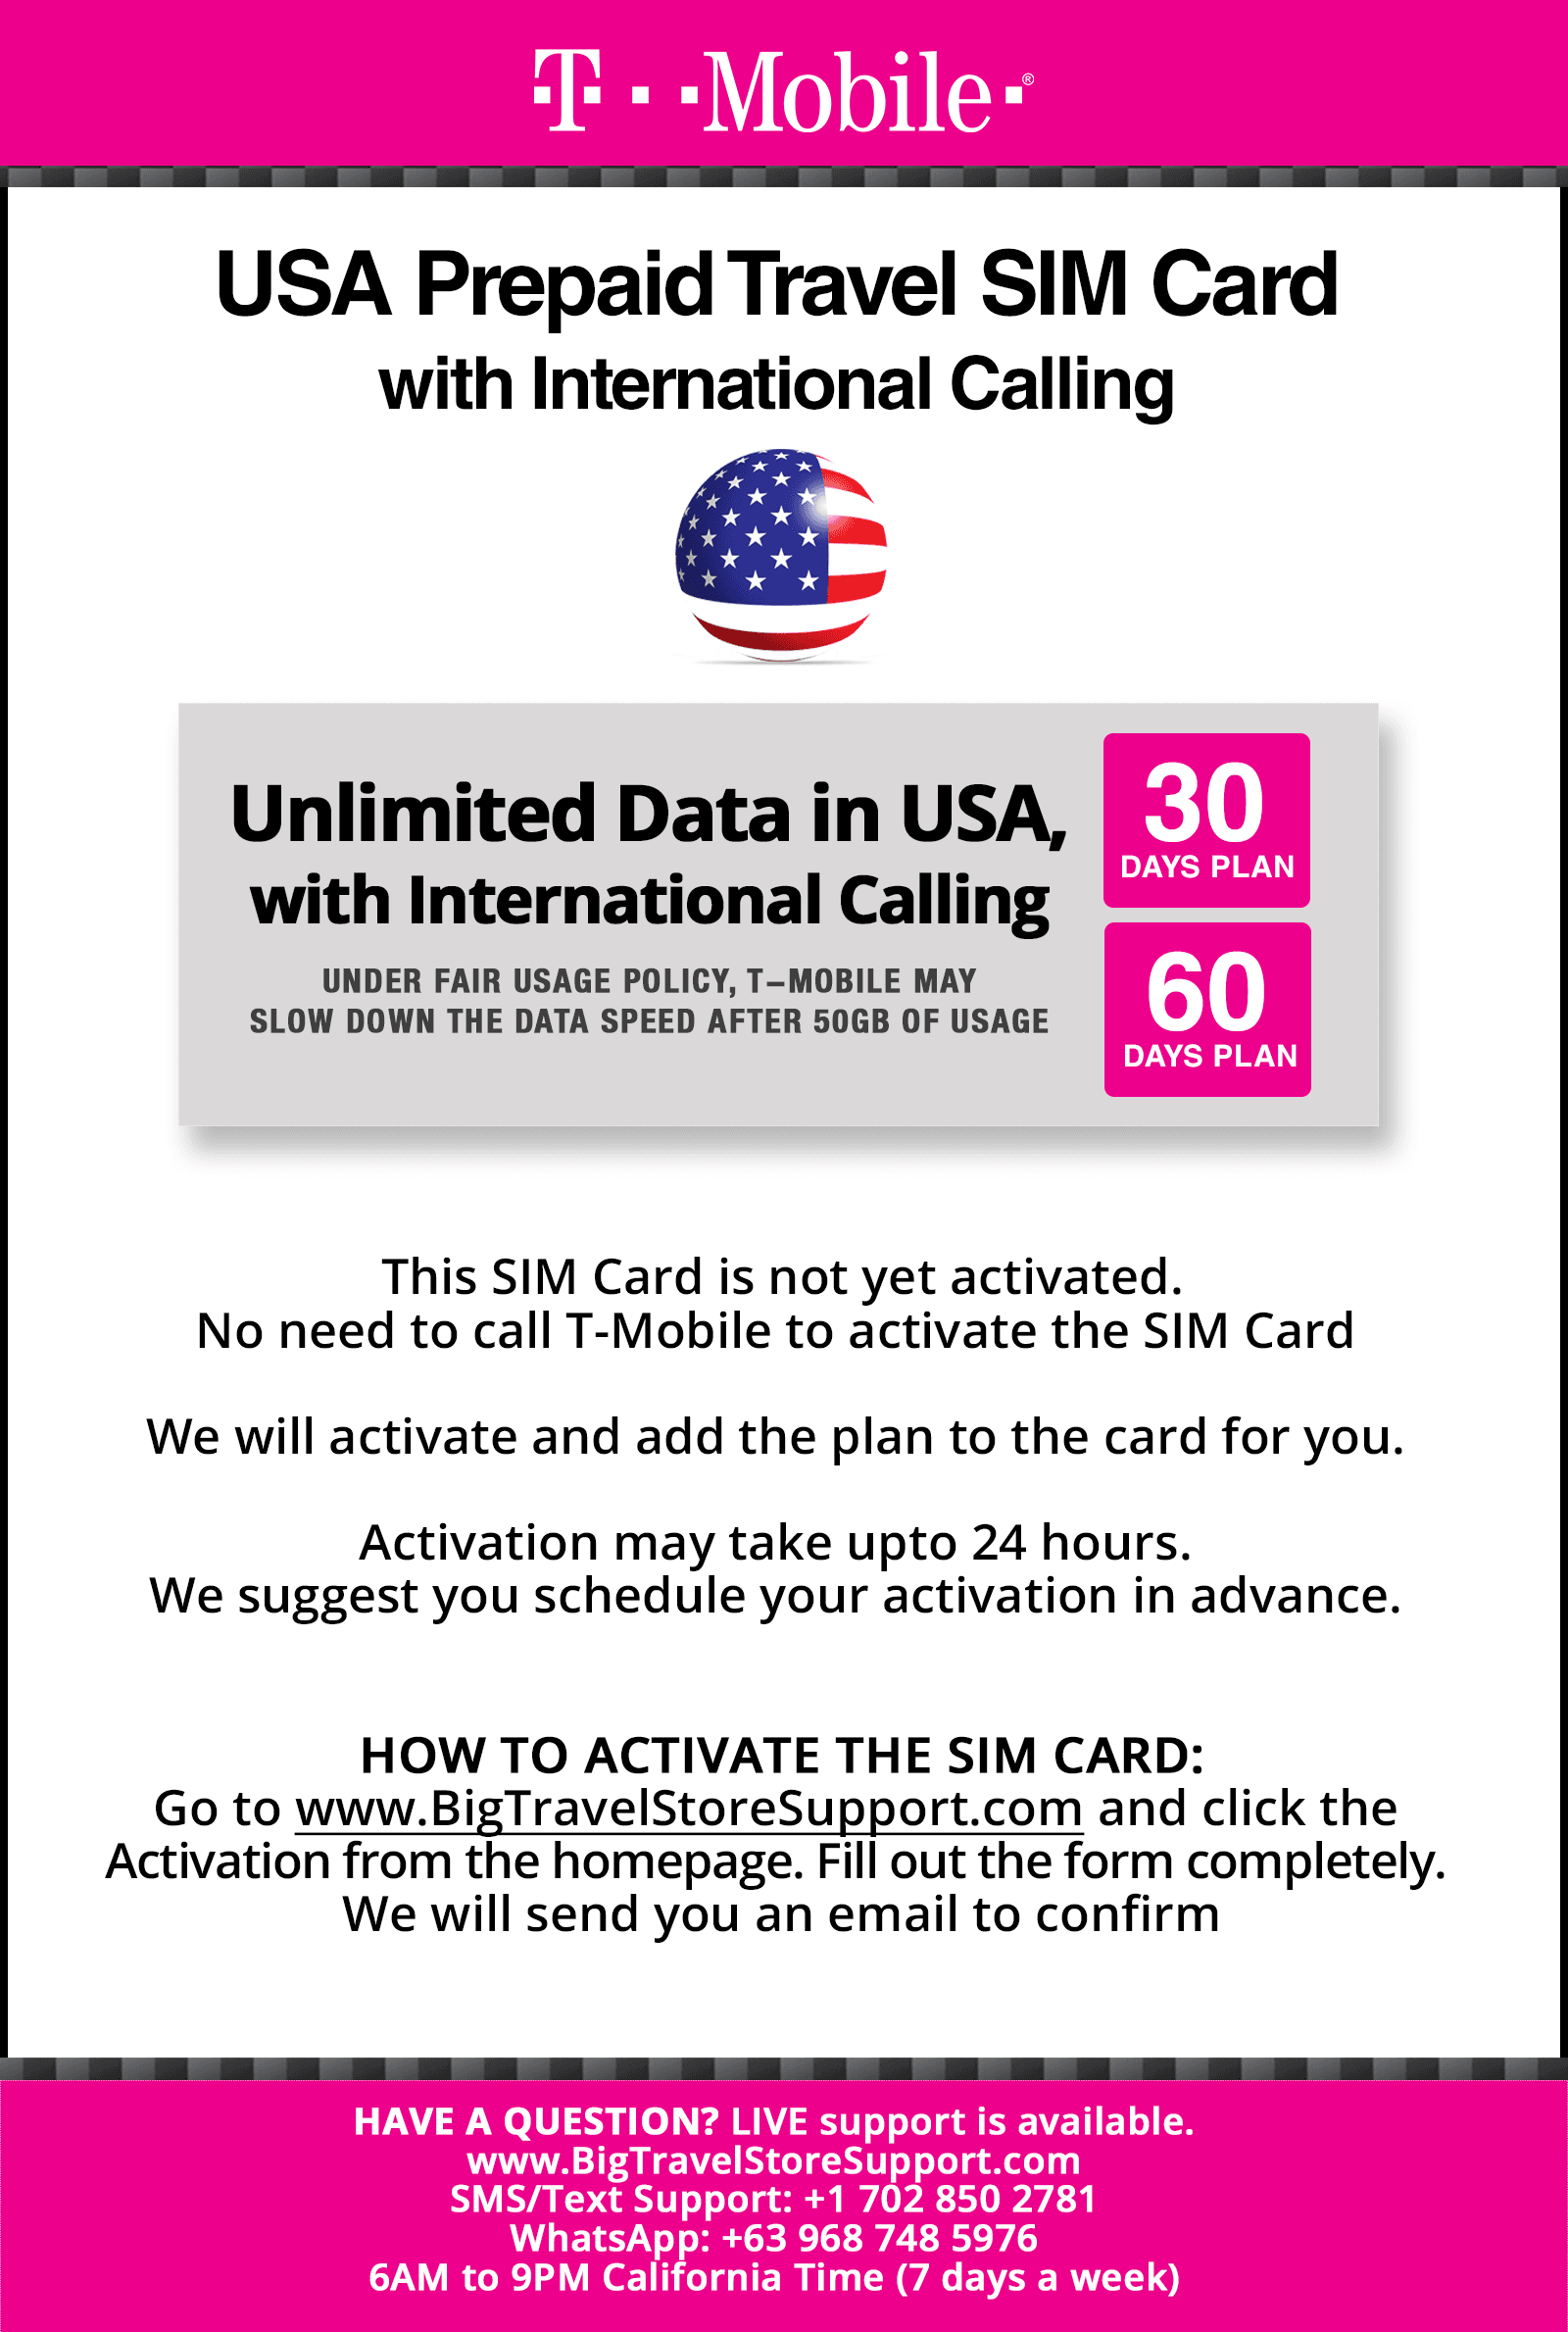 Tarjeta SIM local T-Mobile USA para viajes a los Estados Unidos